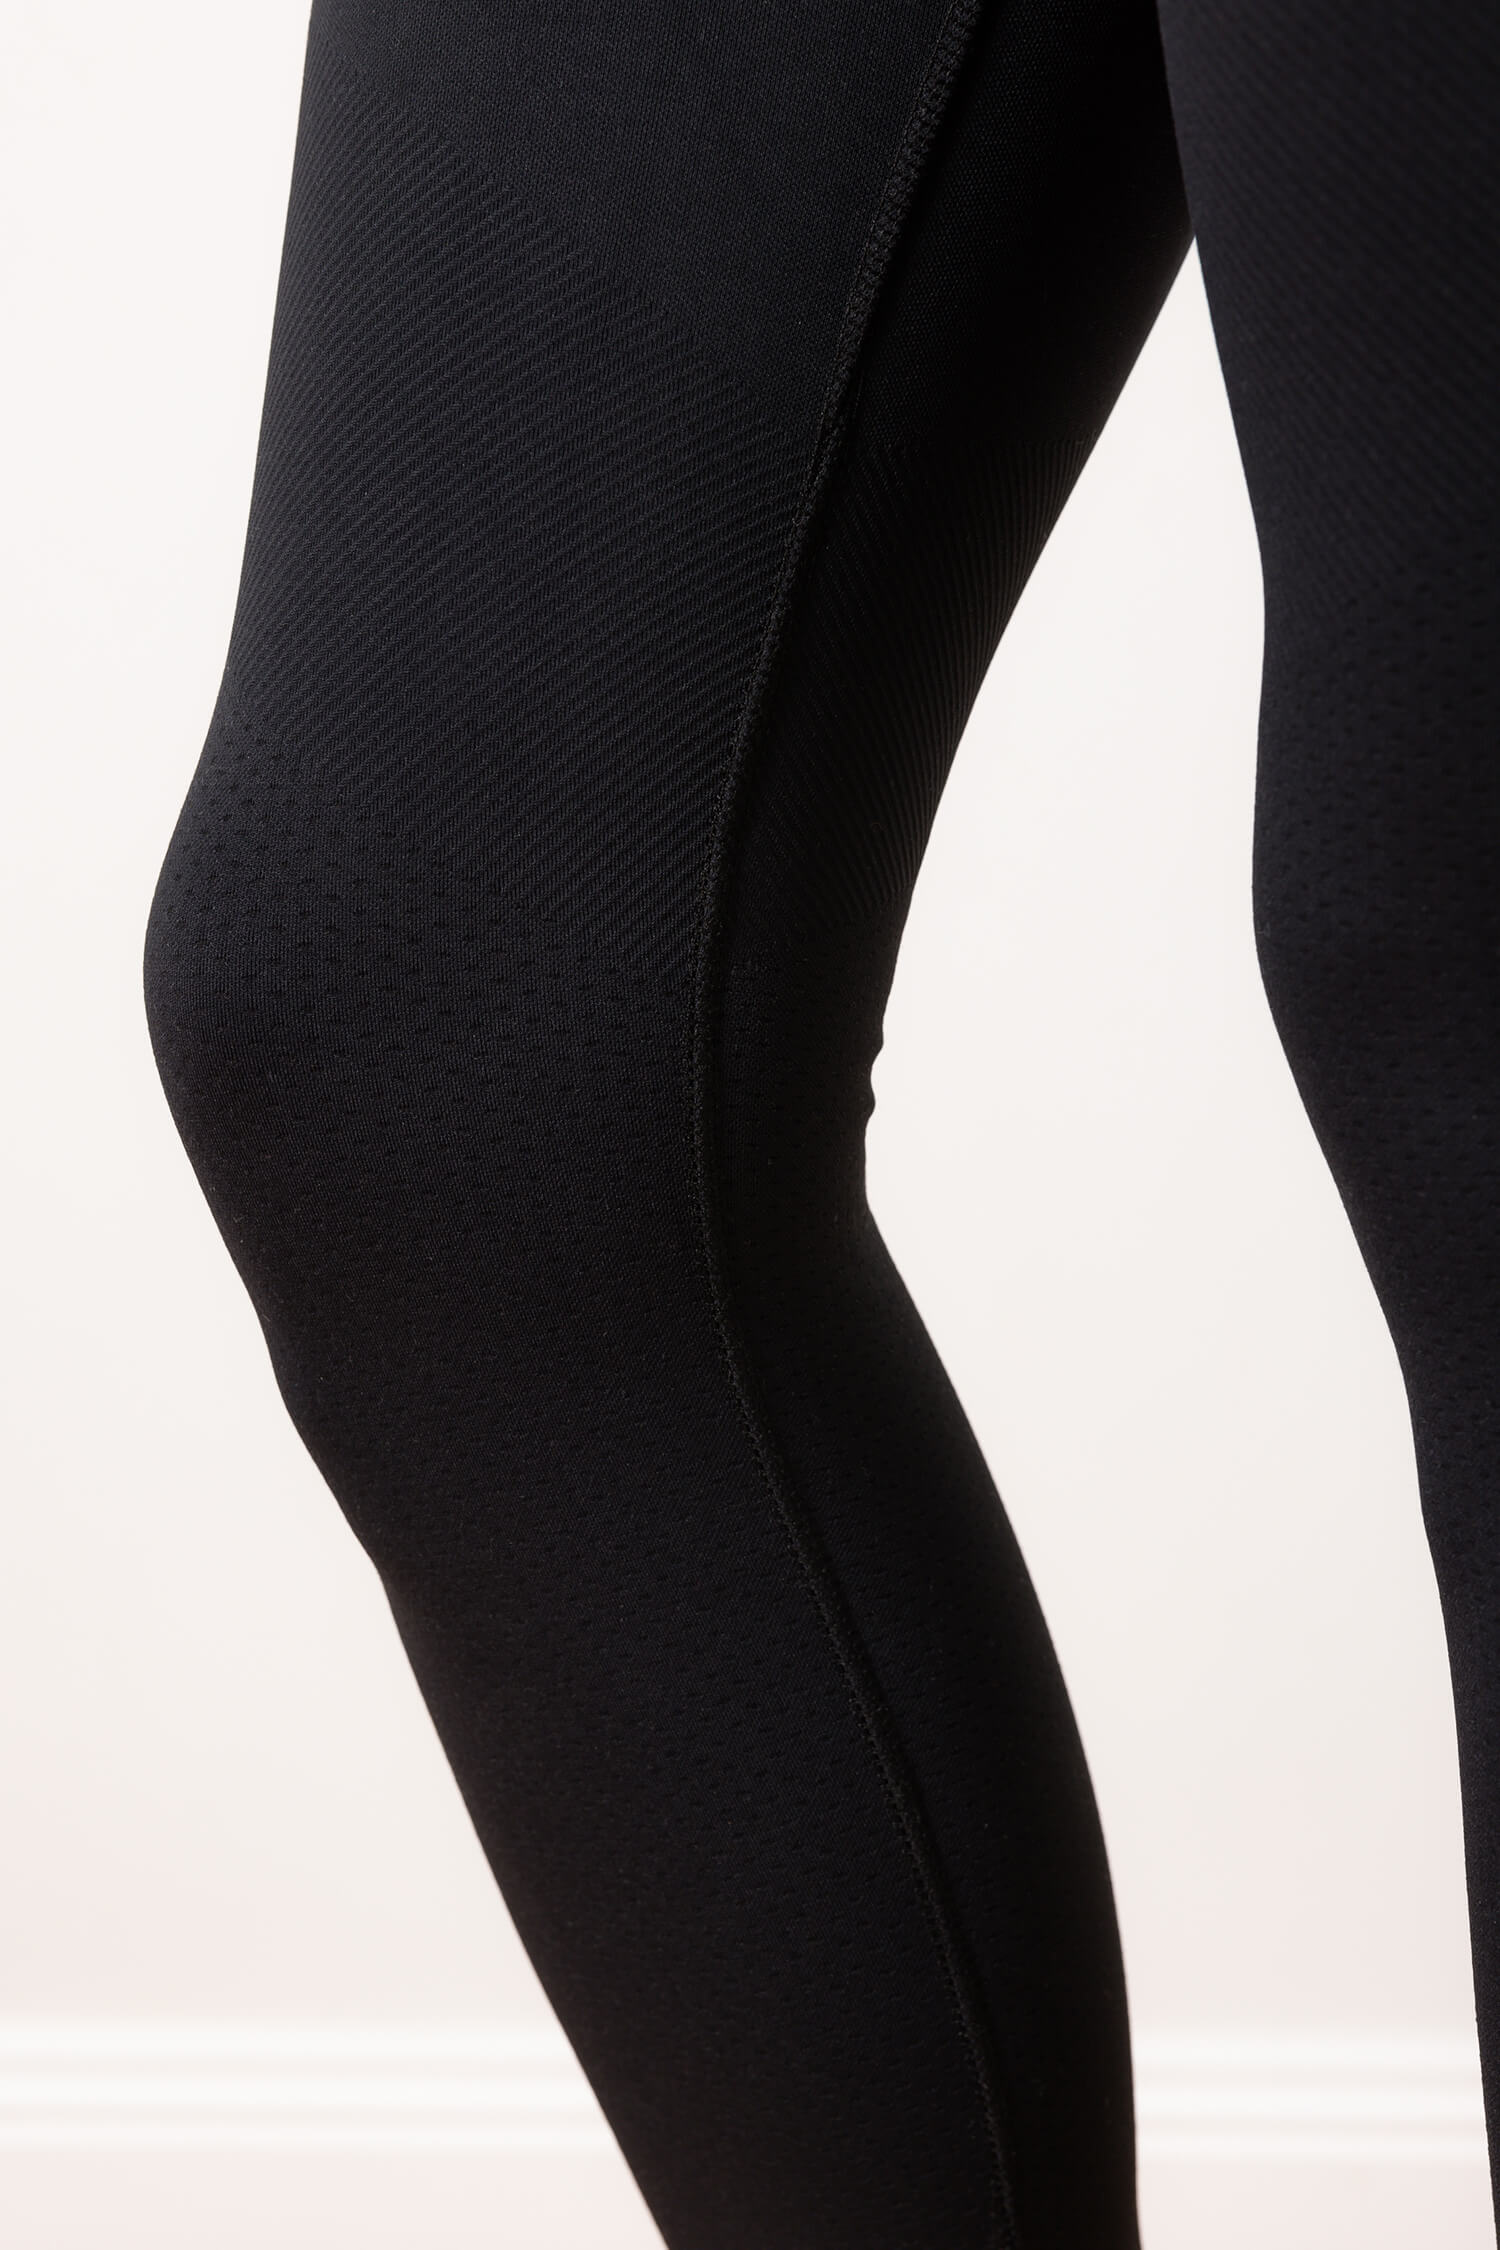 Decathlon Shape Booster Women's Fitness Cellulite Reduction Leggings Black  XS